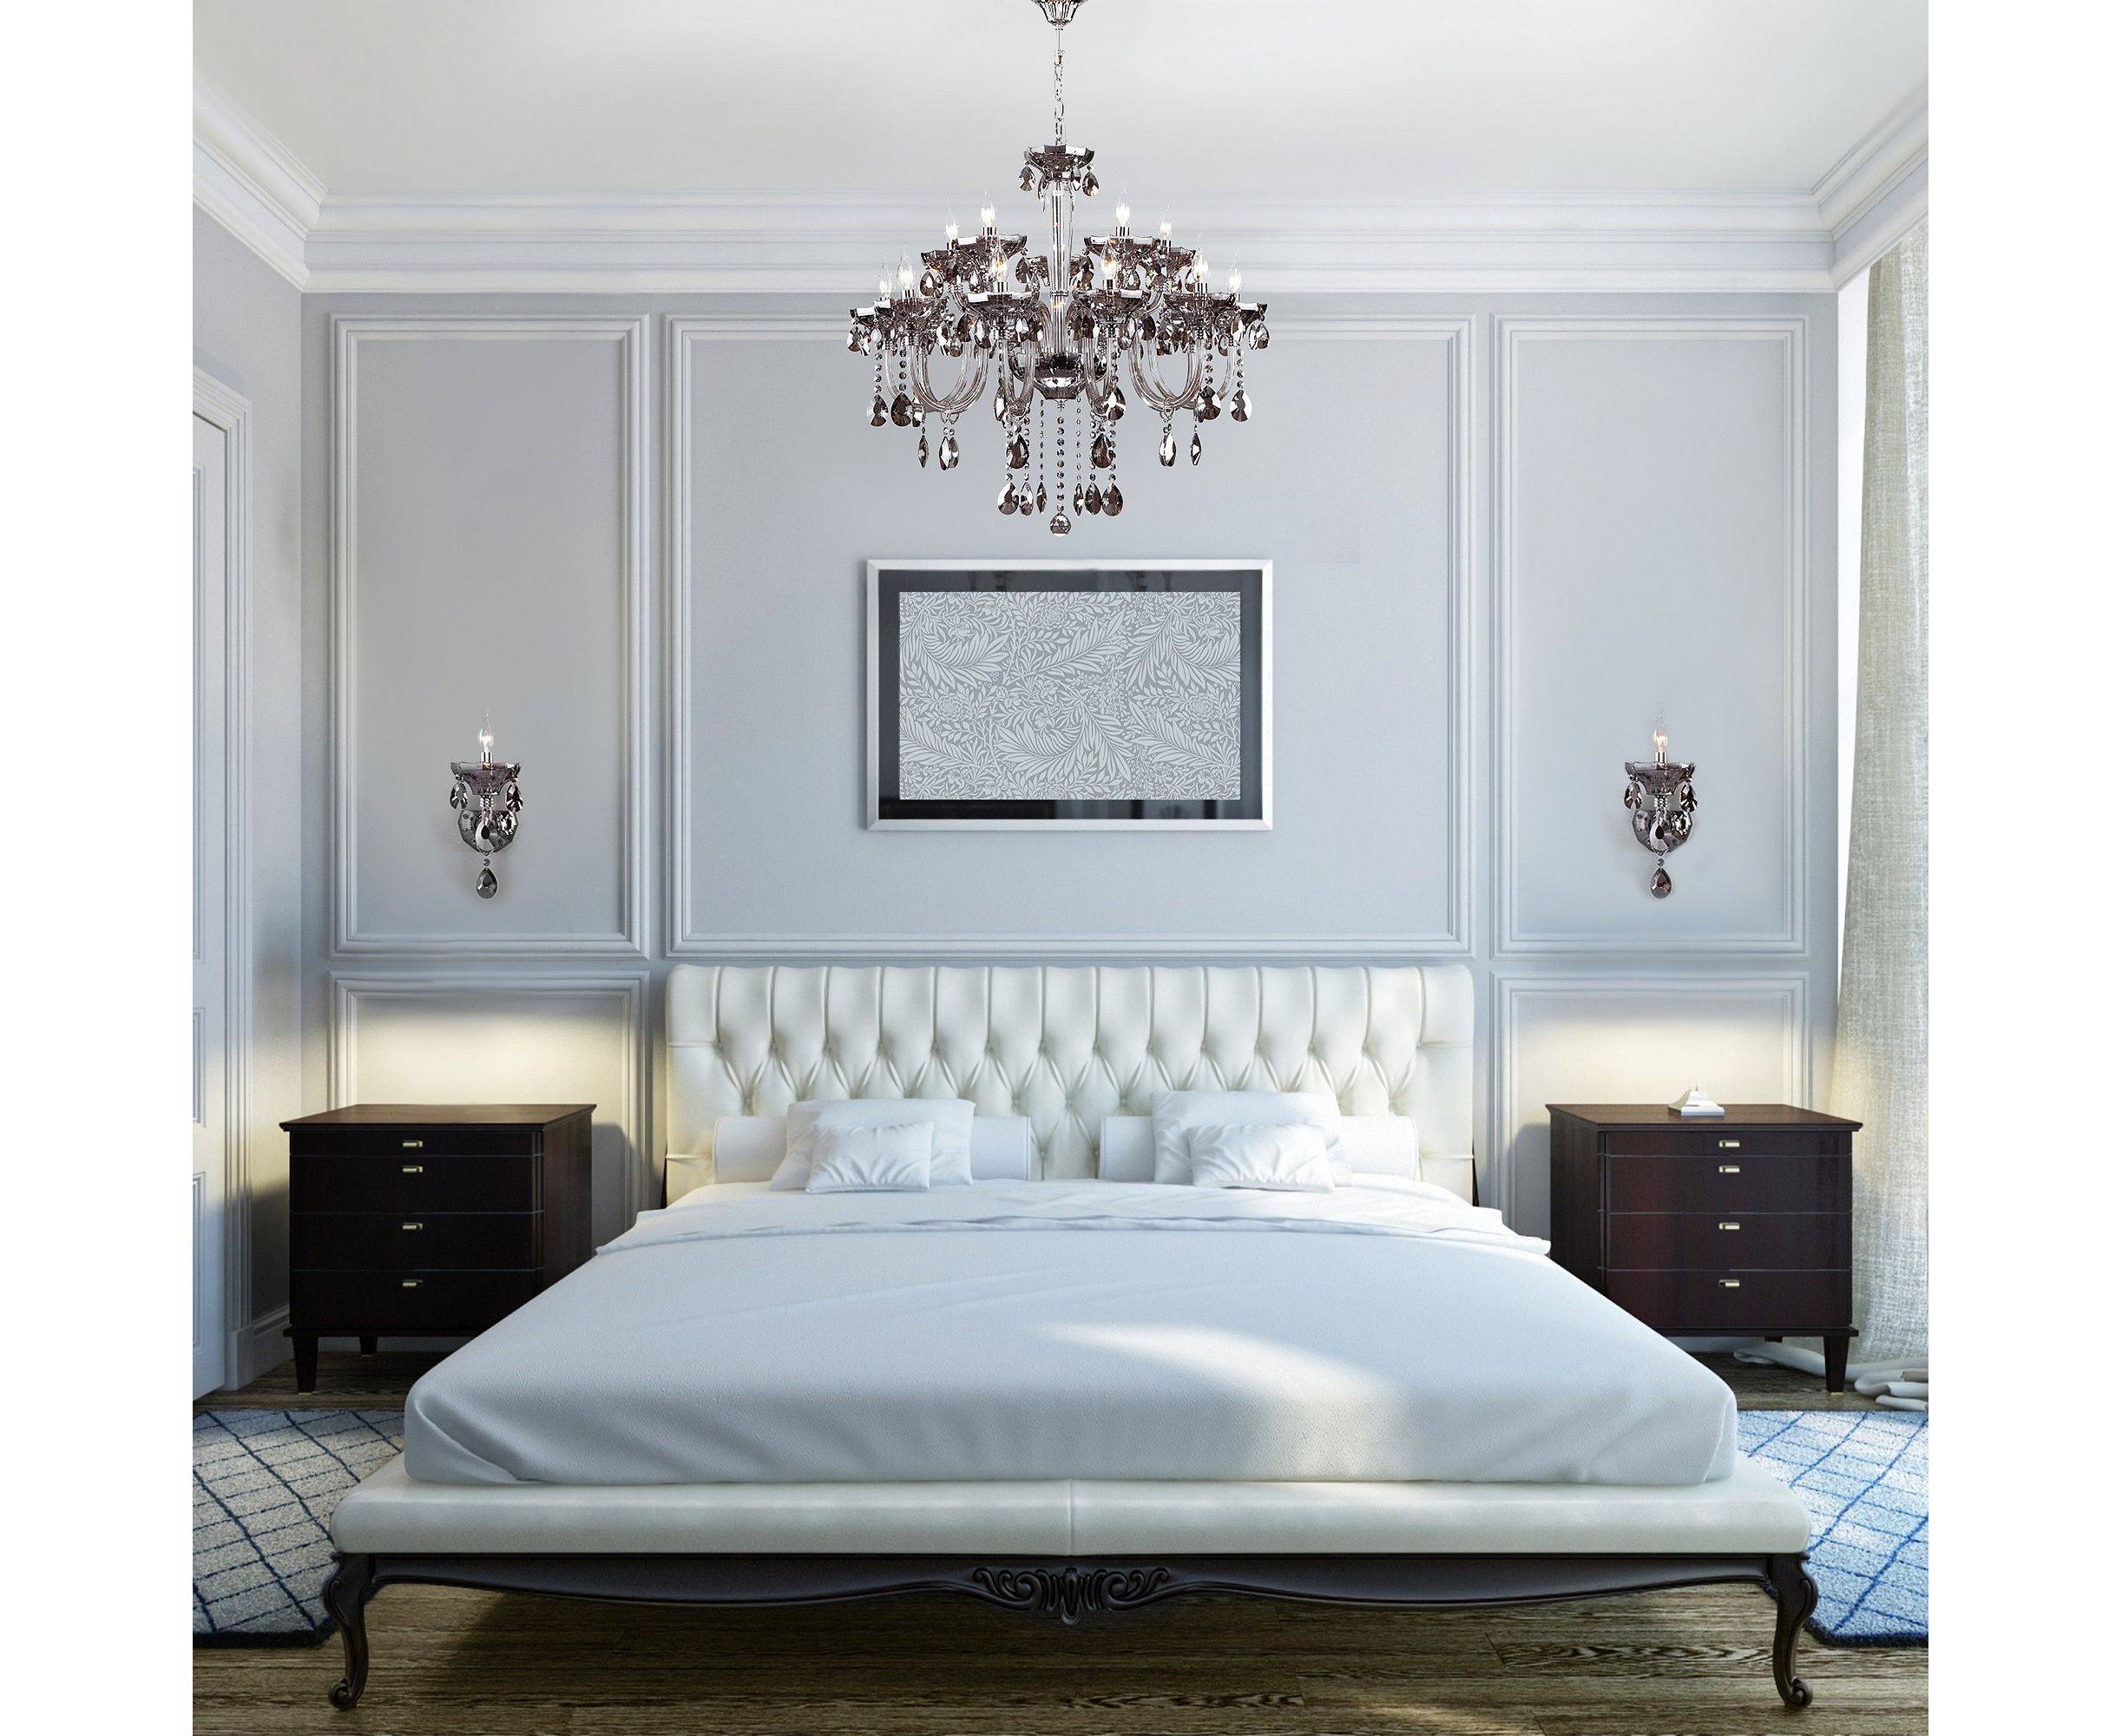 Классические спальни: 200 фото лучших идей по оформлению красивой спальни в классическом стиле